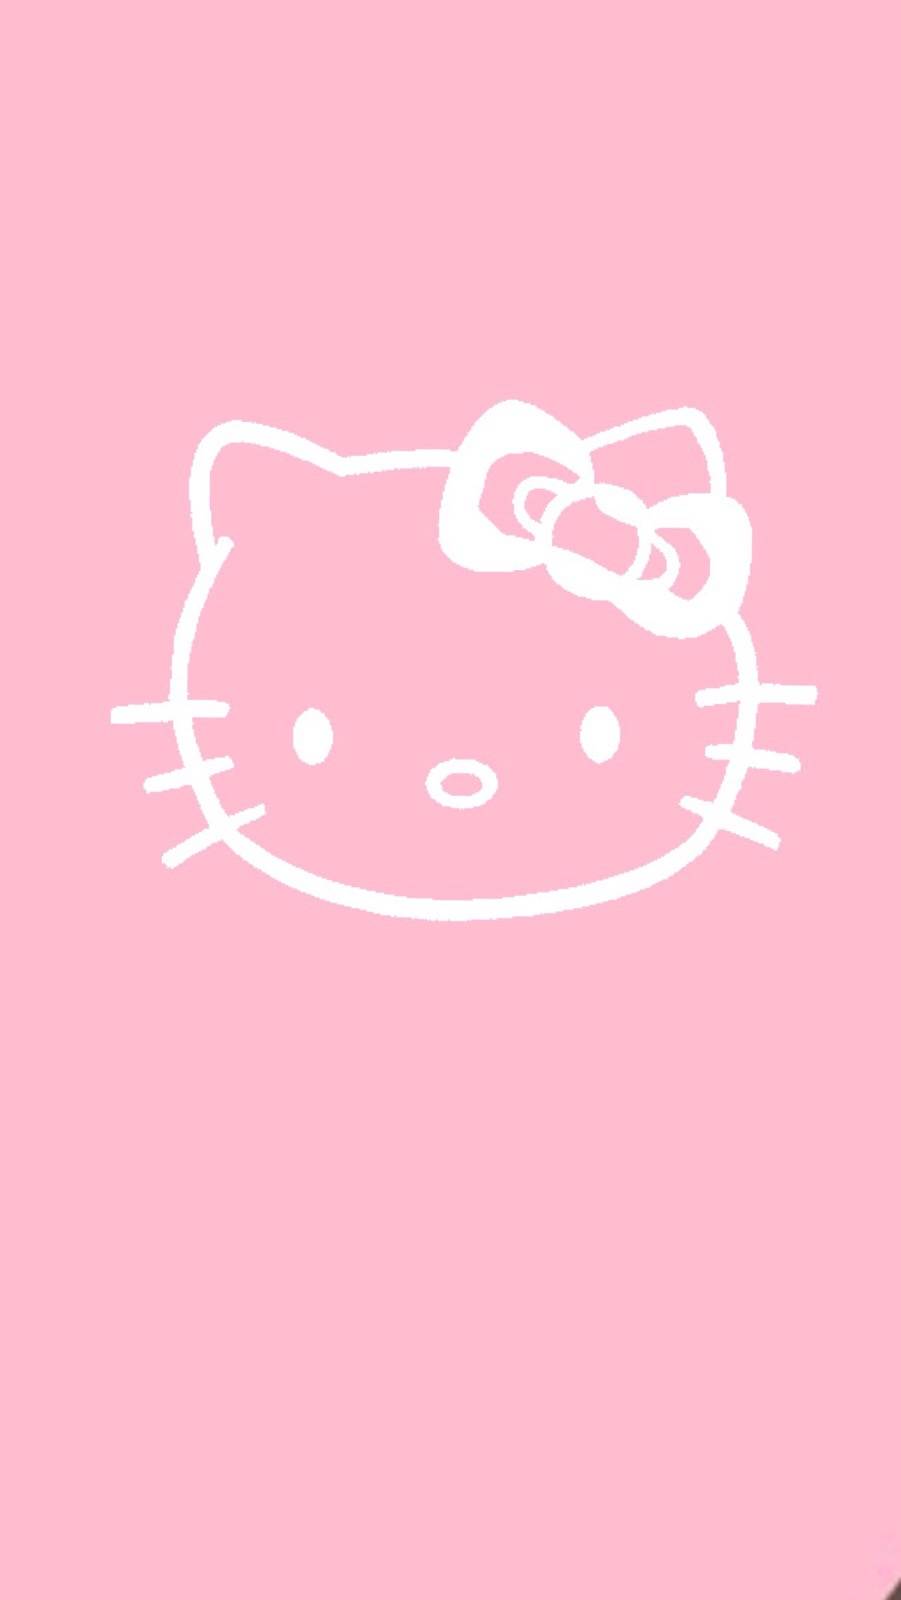 壁纸#hello kitty凯蒂猫高清手机壁纸 拿图评论让我看到你的支持好吗